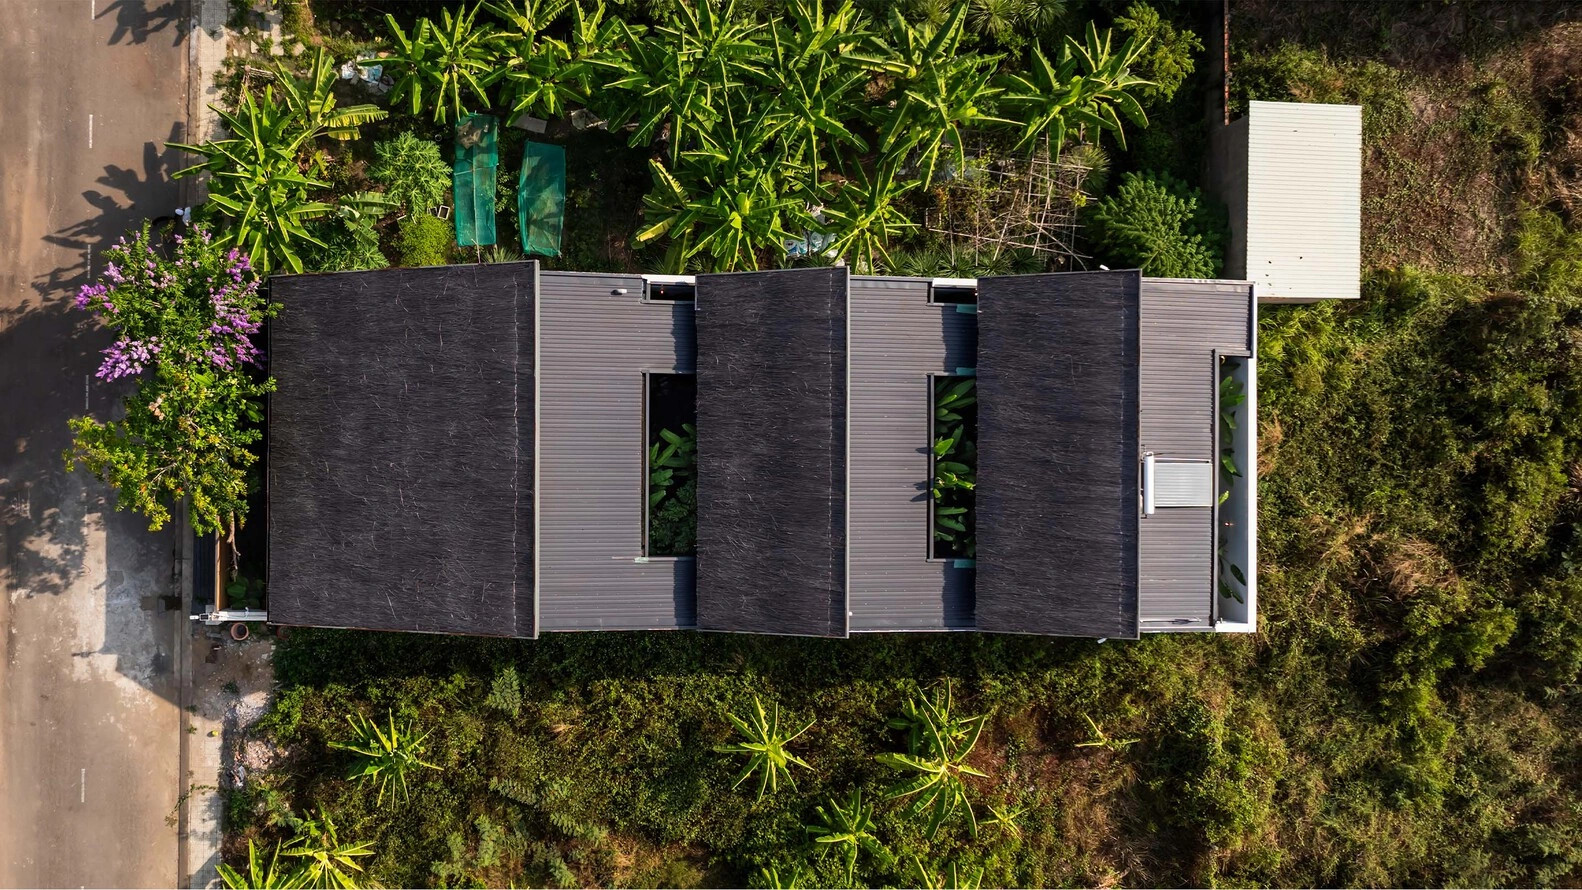 Biệt thự lợp mái tranh giữa vườn chuối xanh mướt tại TPHCM - 2